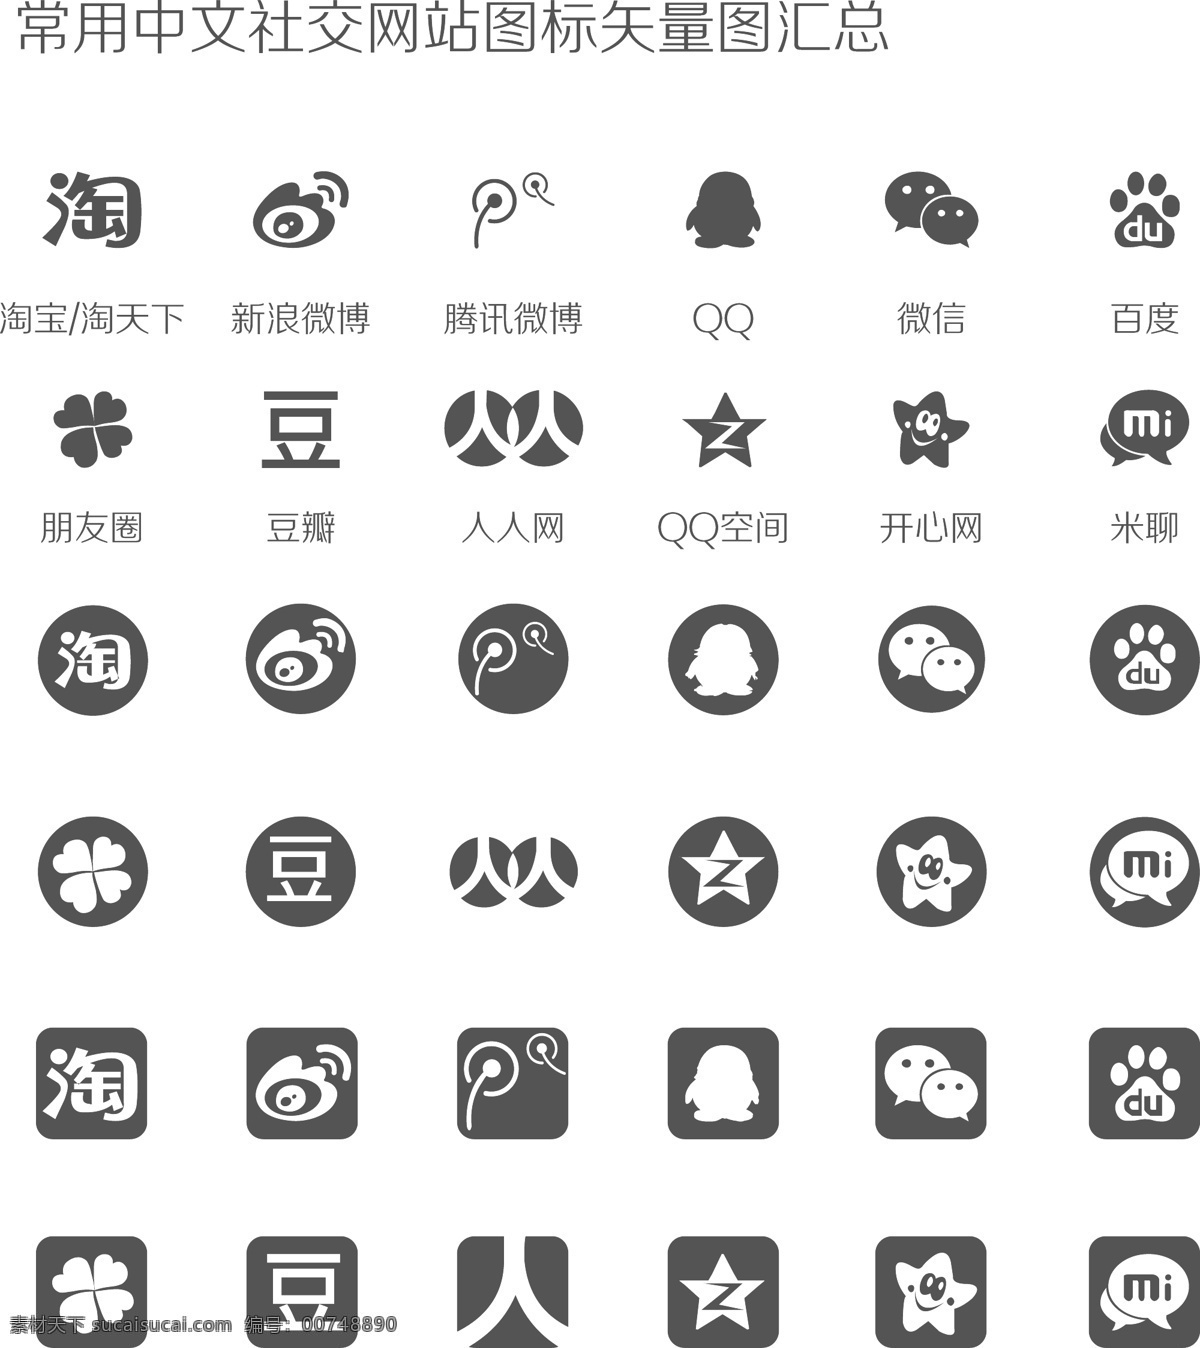 常用 中文 社交 网站 图标 矢量图 汇总 中文社交网站 矢量 app 移动界面设计 图标设计